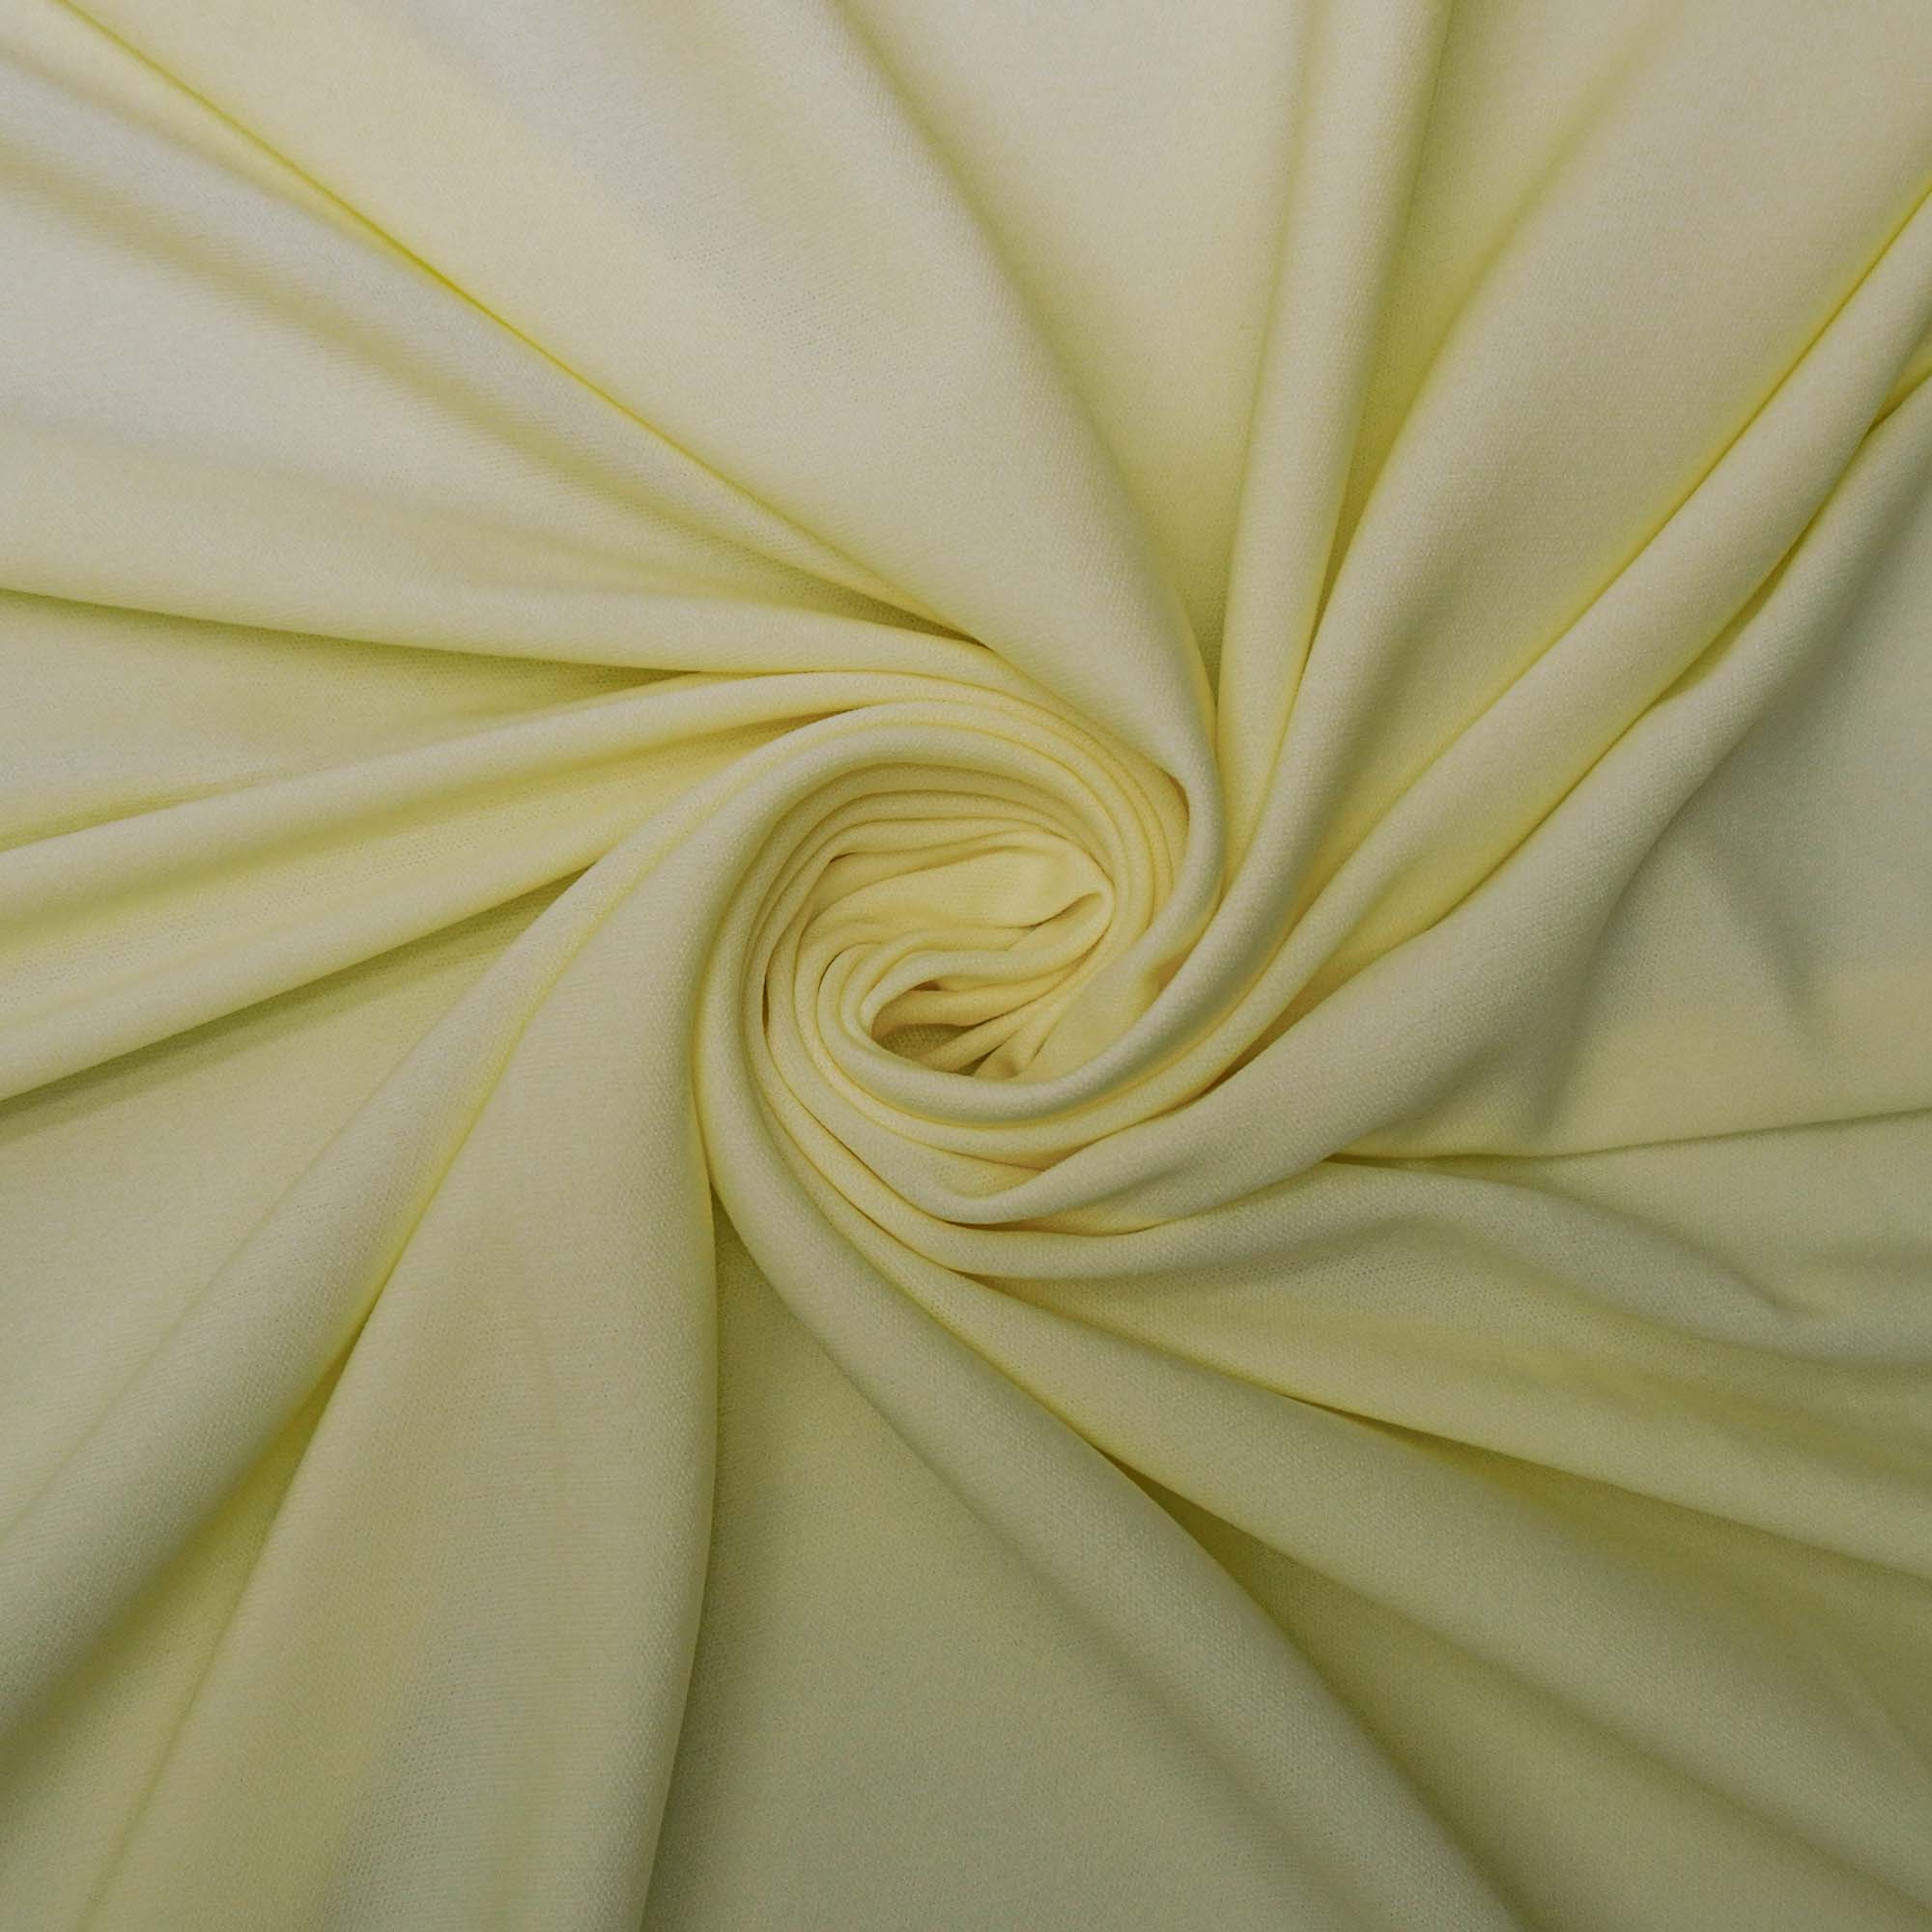 Tecido malha helanca amarelo manteiga